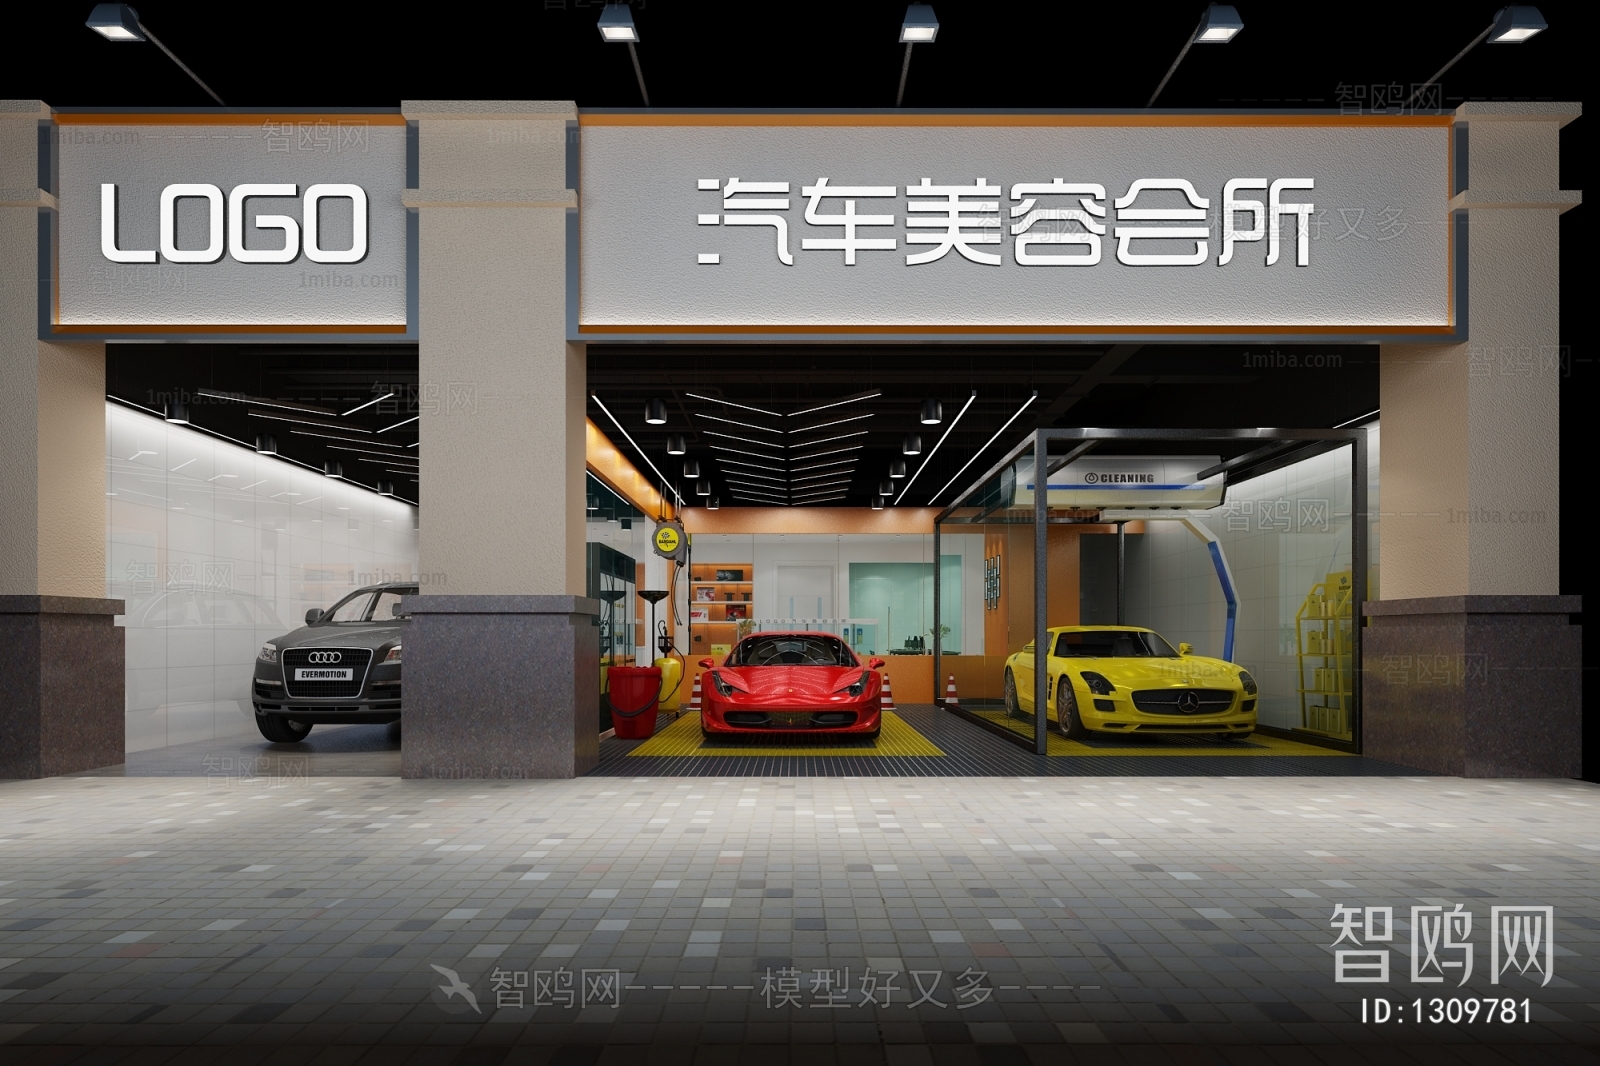 Modern Automobile 4S Shop